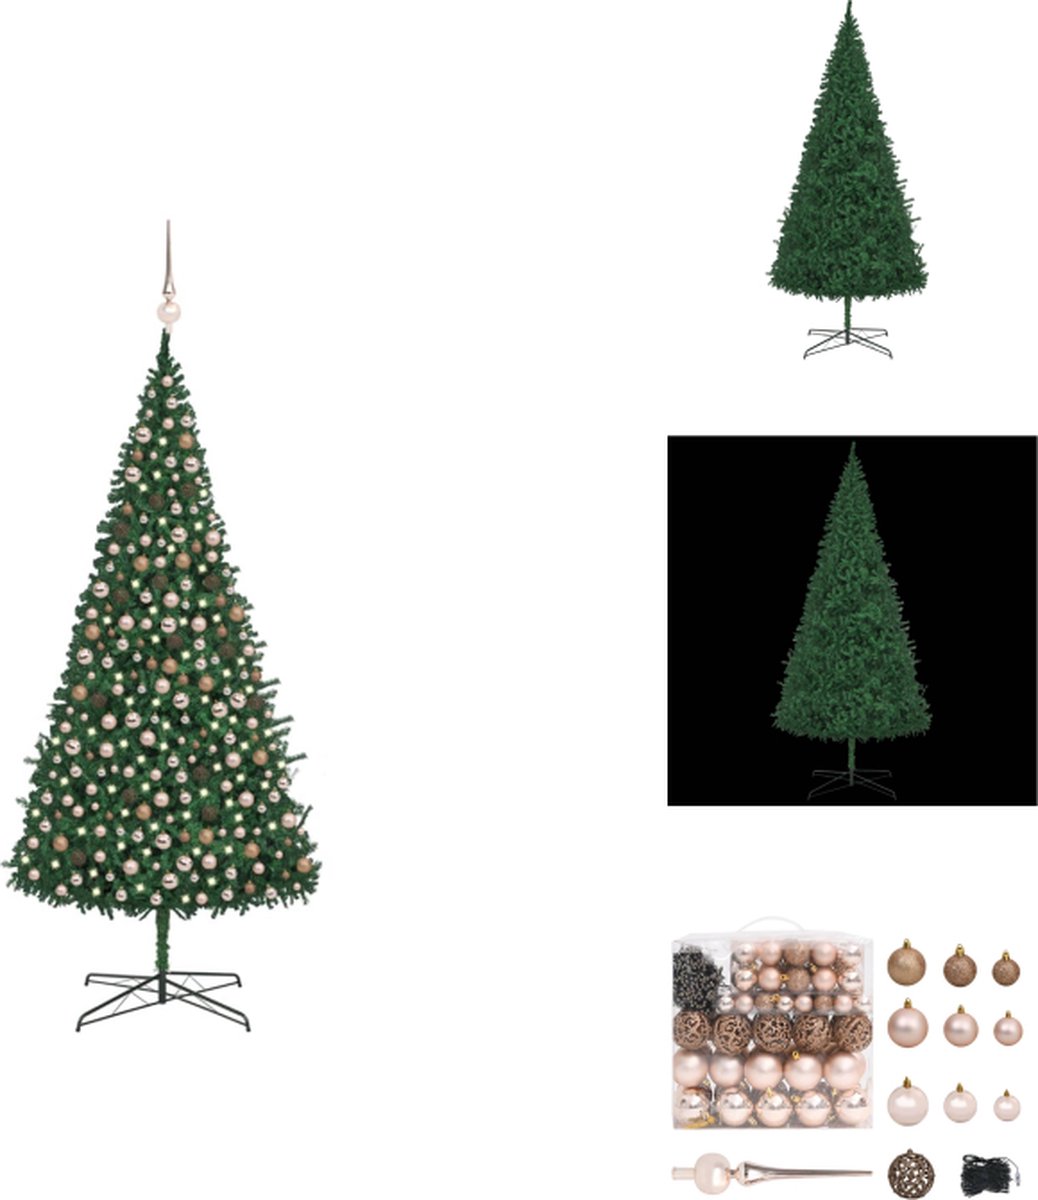 vidaXL Kunstkerstboom - Authentiek - PVC takken - Lichtgewicht en duurzaam - Herbruikbaar - Stalen basis - Energiezuinige LED-verlichting - Prachtig versierd - USB-aansluiting - Kleur groen - Inclusief accessoires - vidaXL - Decoratieve kerstboom